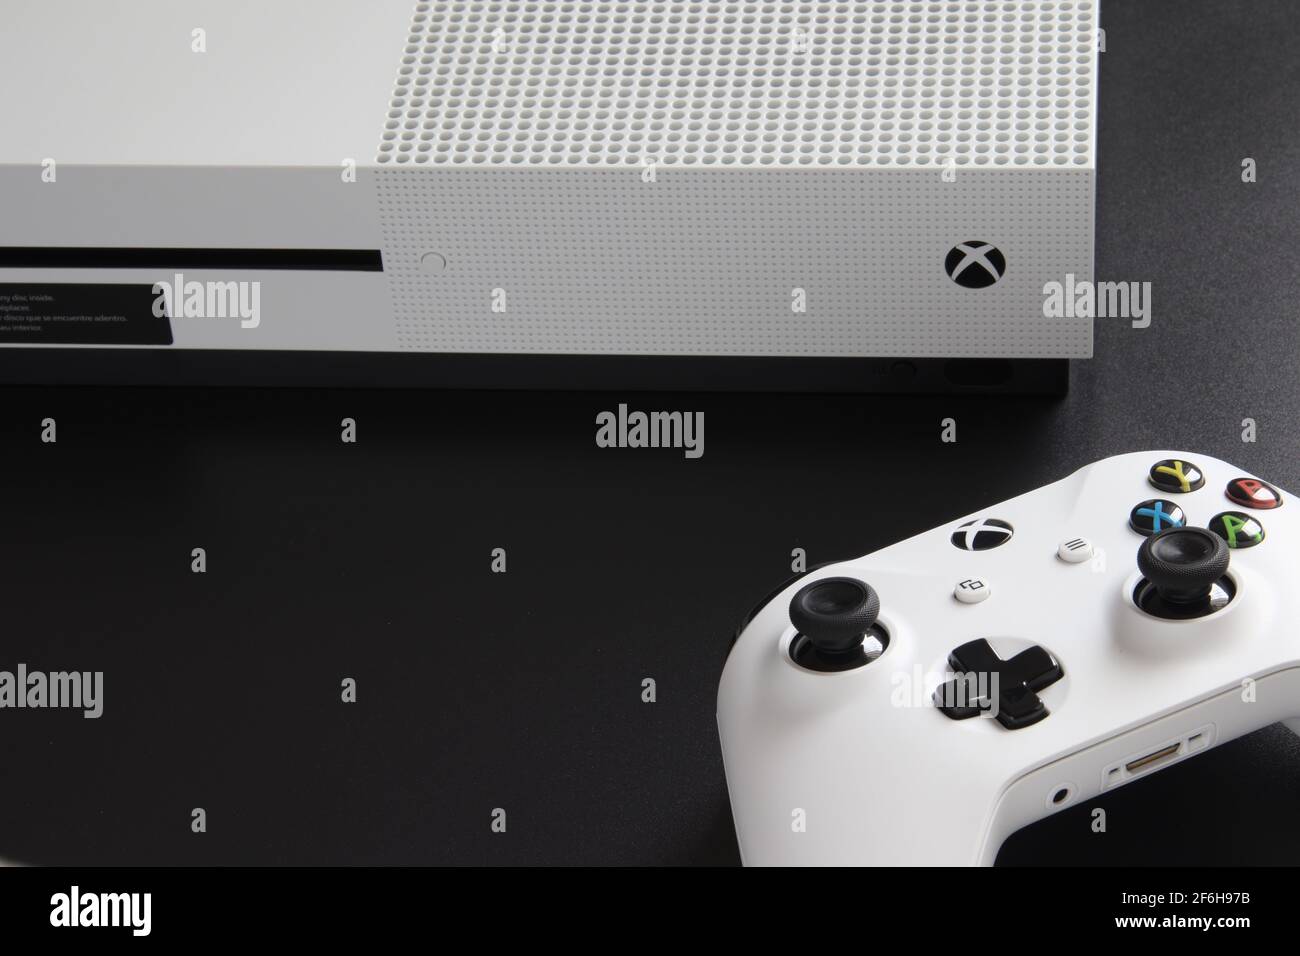 CIUDAD DE MÉXICO, MÉXICO - MARZO 18 2021: Consola y dispositivo de juego de una Xbox One blanca. Foto de stock